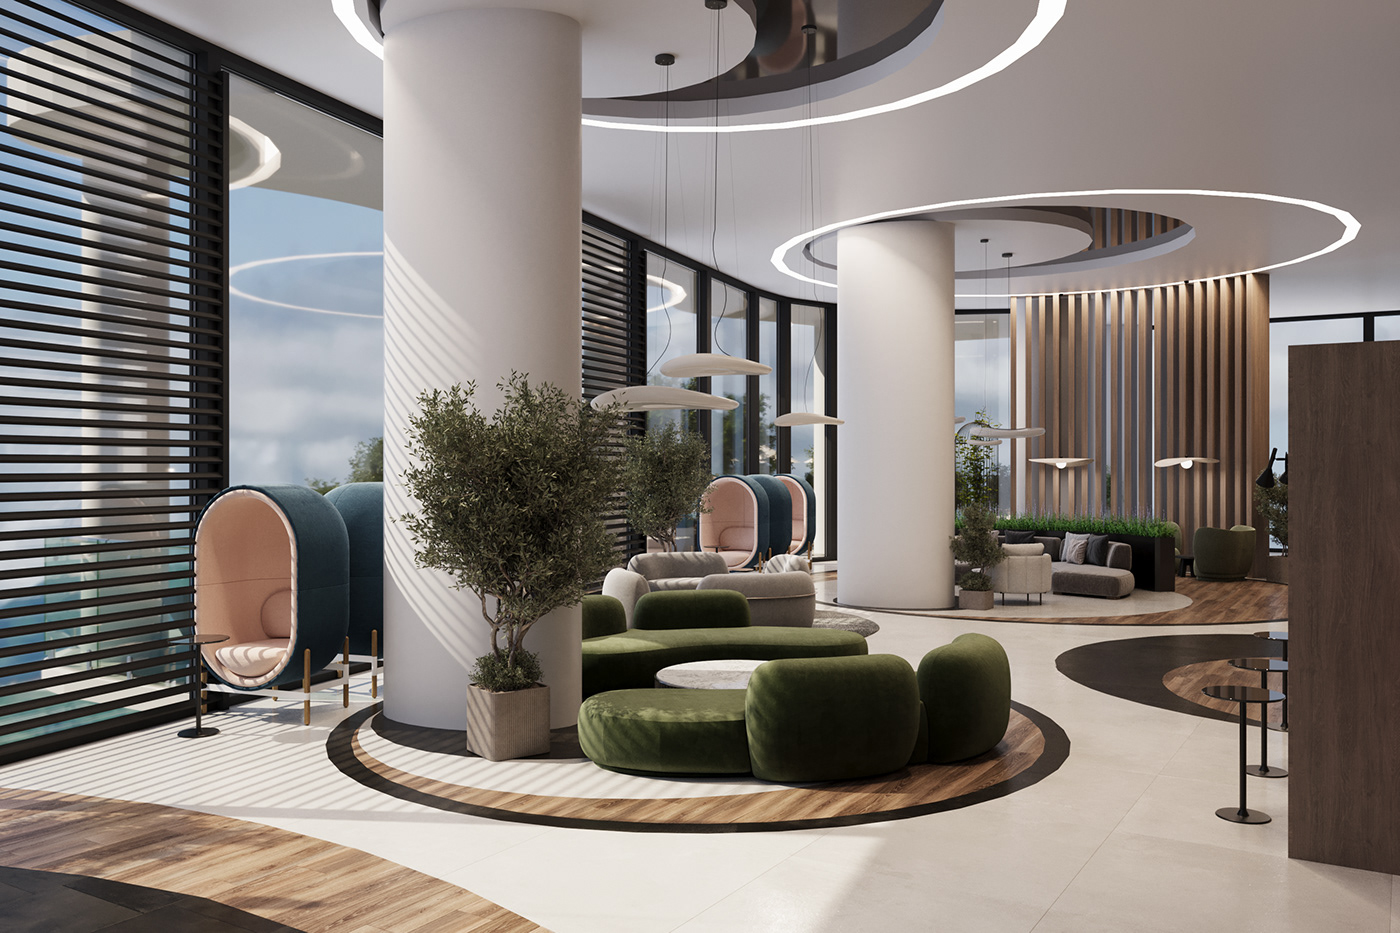 3ds max Render visualization interior design  corona design